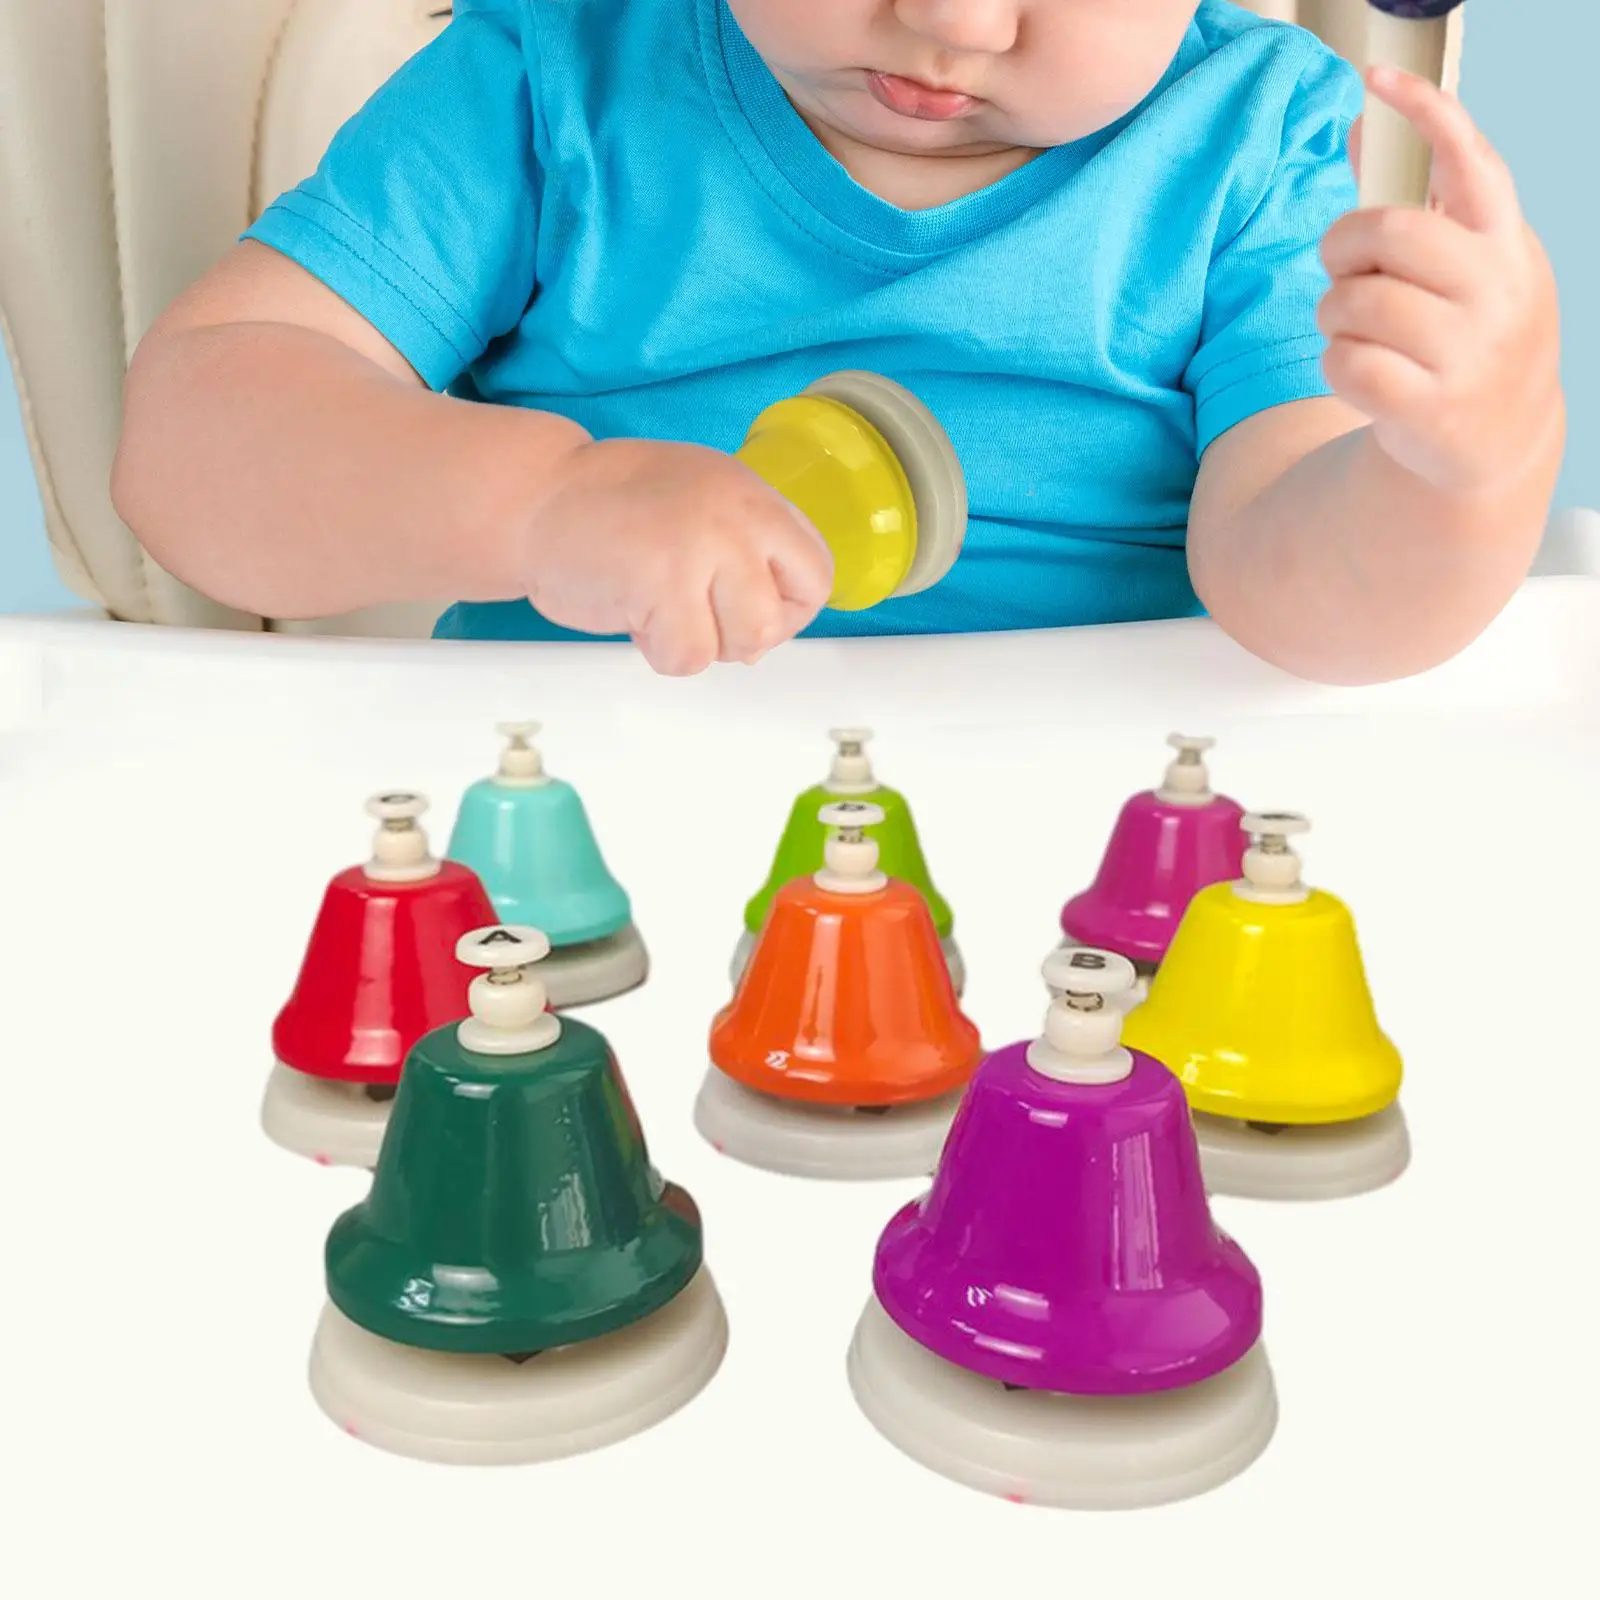 Dzwonki na biurko dla dzieci diatoniczne chromatyczne muzyczne zabawki edukacyjne kolorowe instrumenty perkusyjne edukacyjne zabawki muzyczne dla dzieci